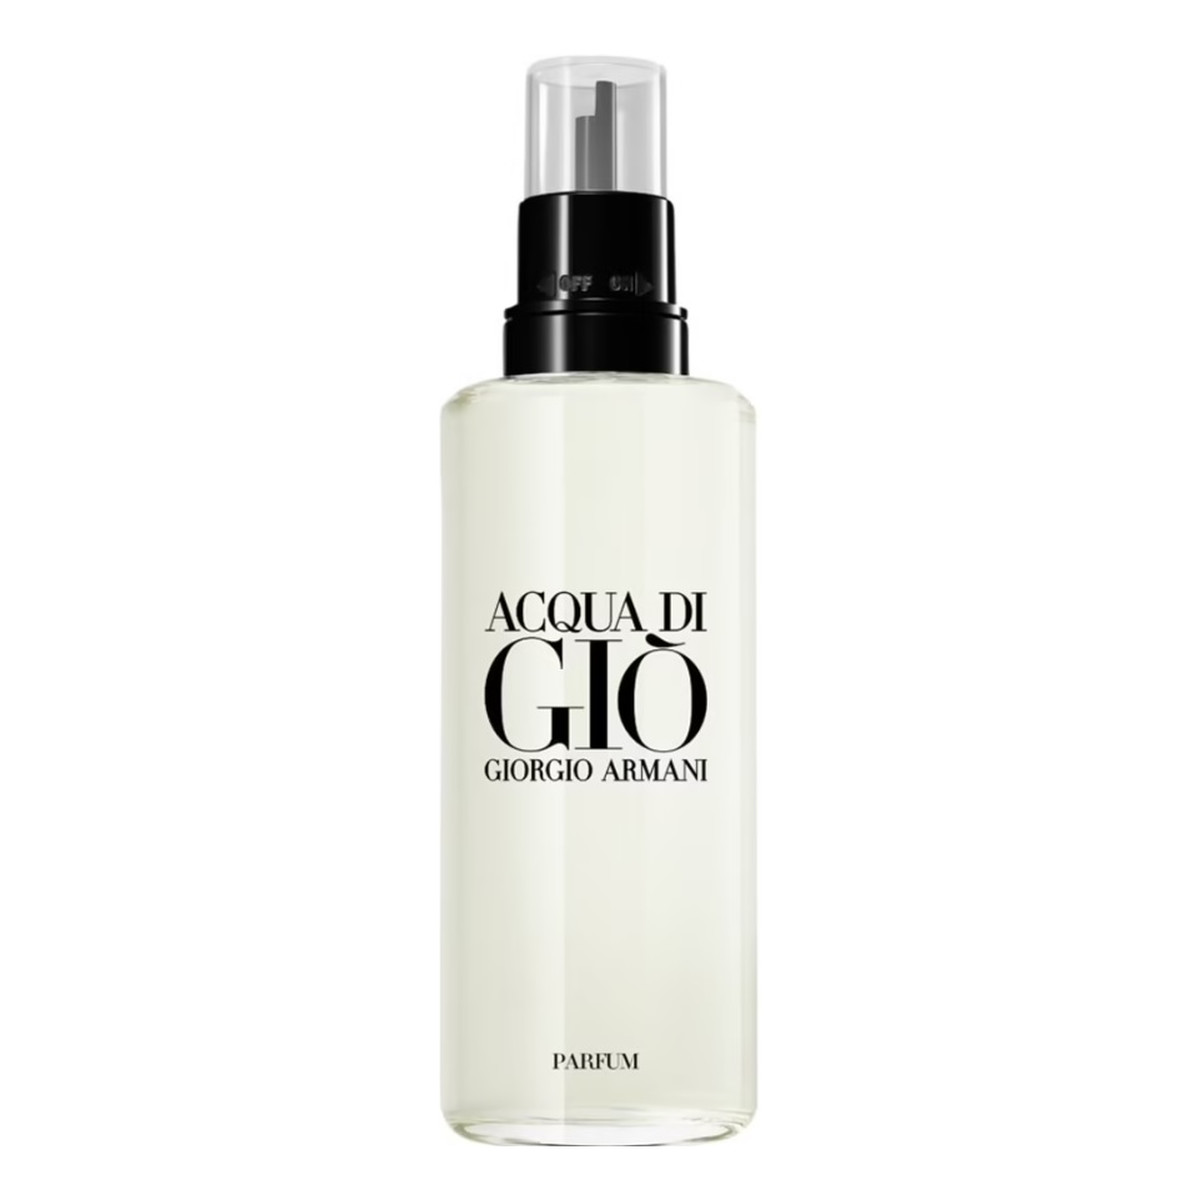 Giorgio Armani Acqua di Gio Pour Homme Perfumy refill 150ml